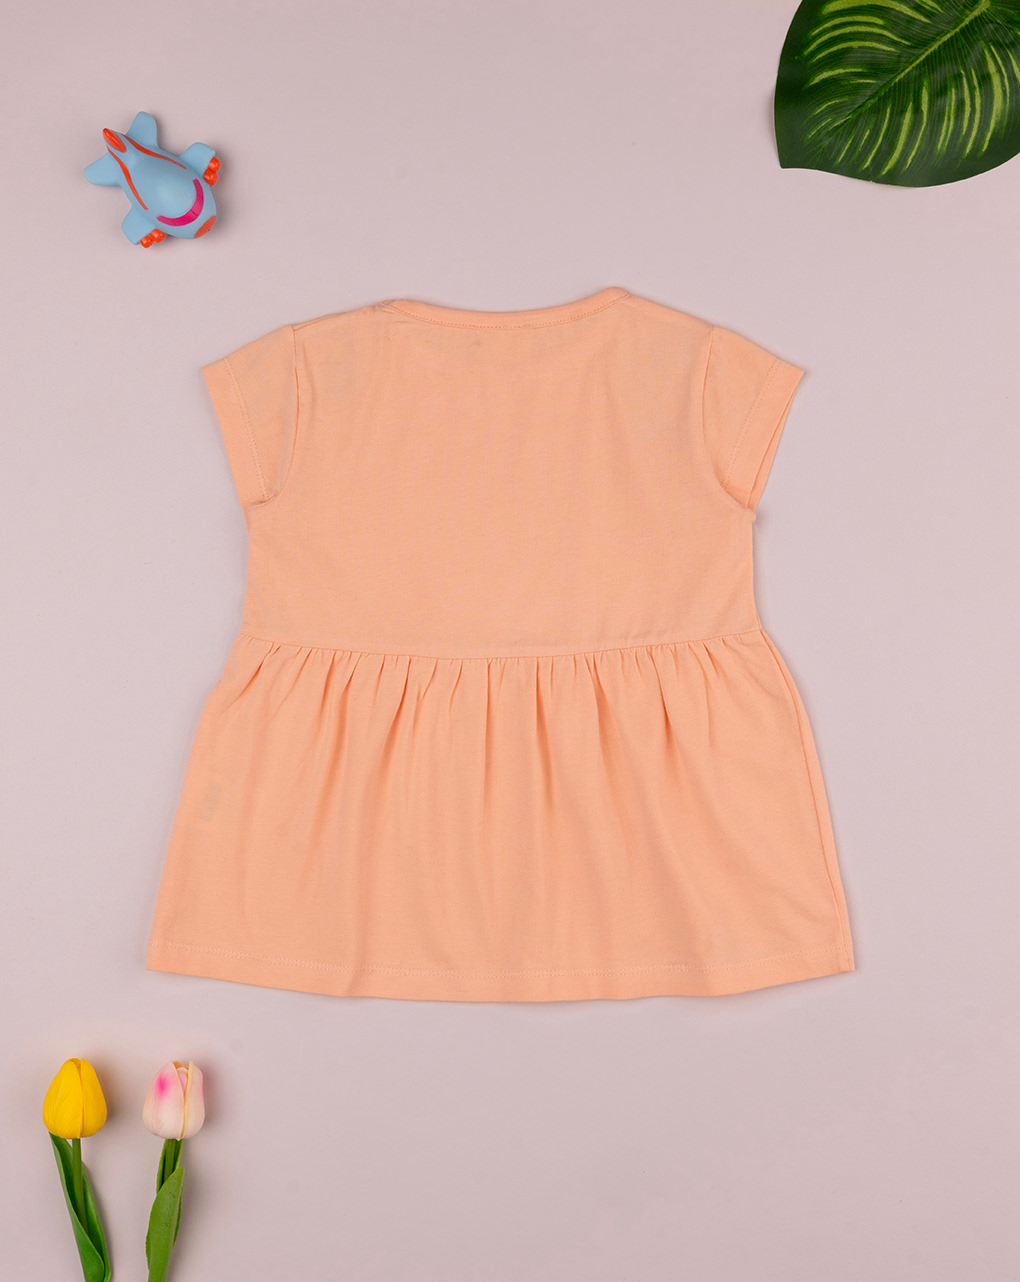 παιδικό t-shirt πορτοκαλί με λουλούδια για κορίτσι - Prénatal